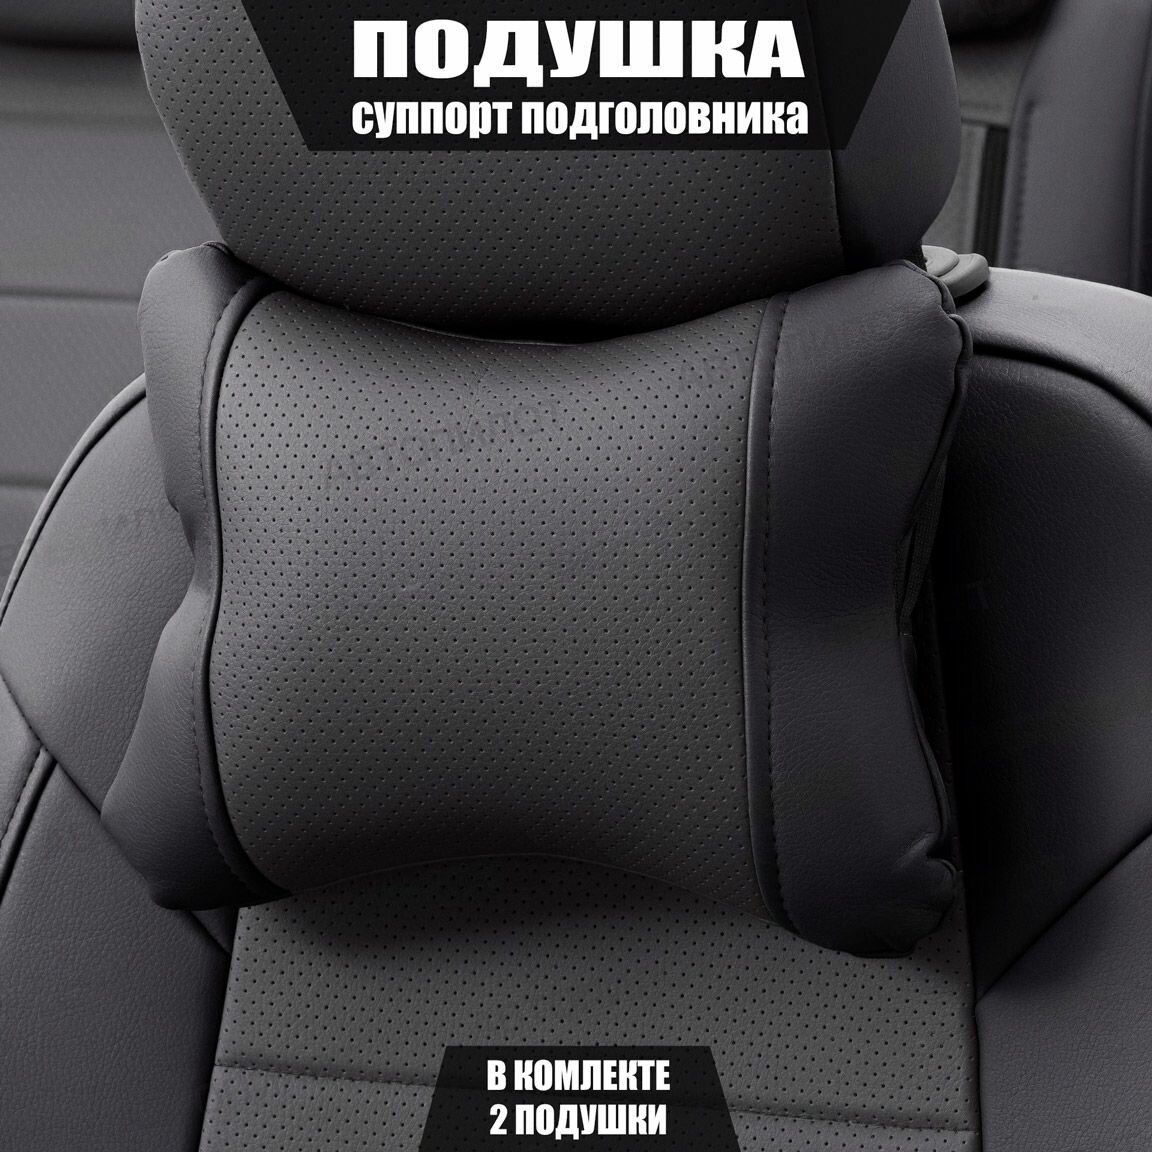 Подушки под шею (суппорт подголовника) для Митсубиси АСХ (2010 - 2013) внедорожник 5 дверей / Mitsubishi ASX Экокожа 2 подушки Черный